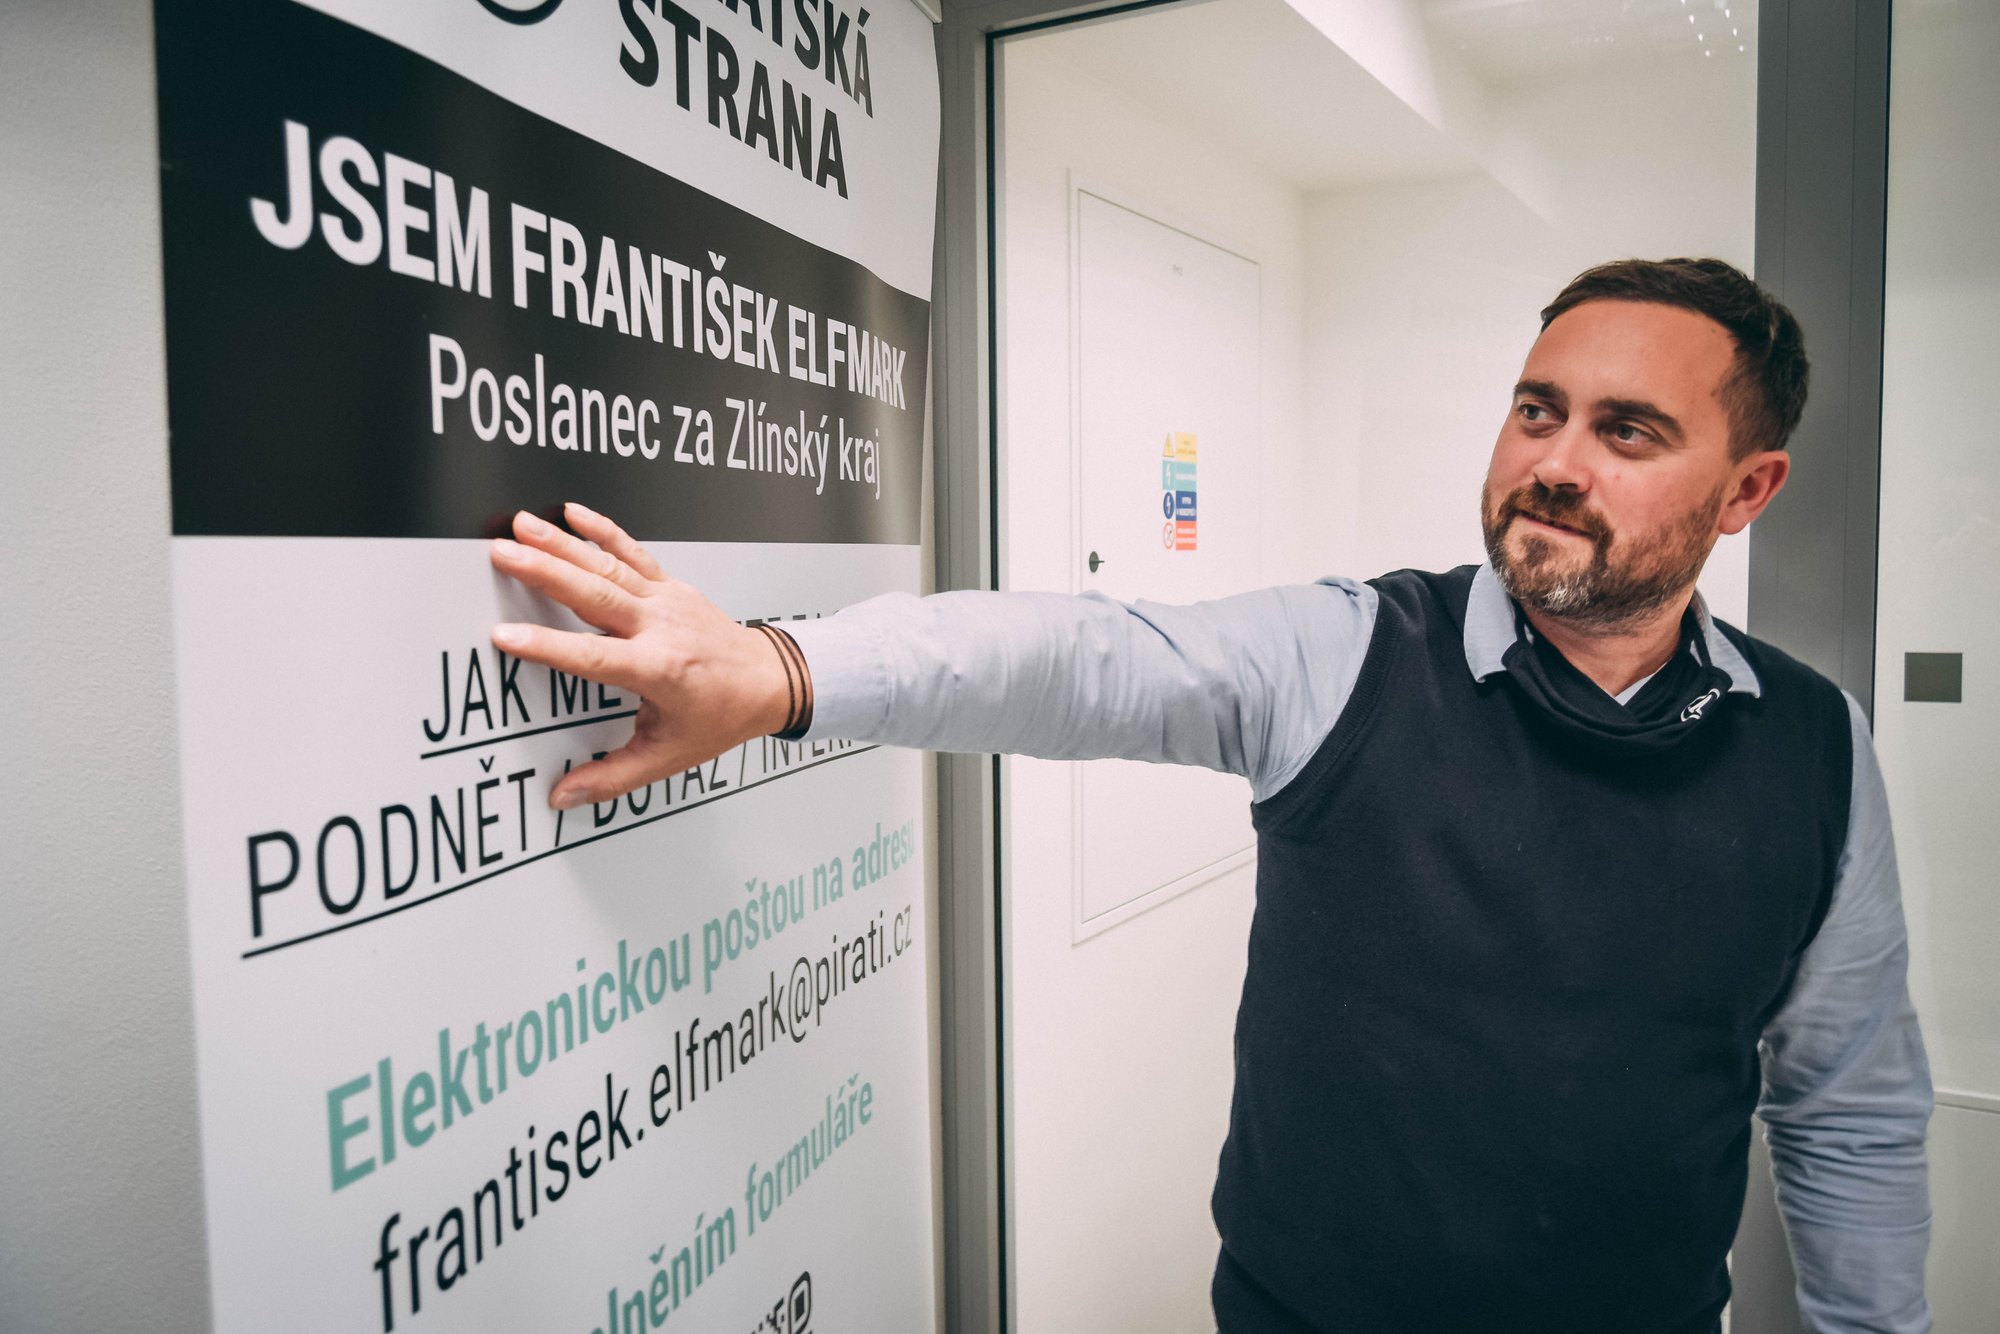 Lídrem Pirátů ve Zlínském kraji pro volby do PSP se stal František Elfmark